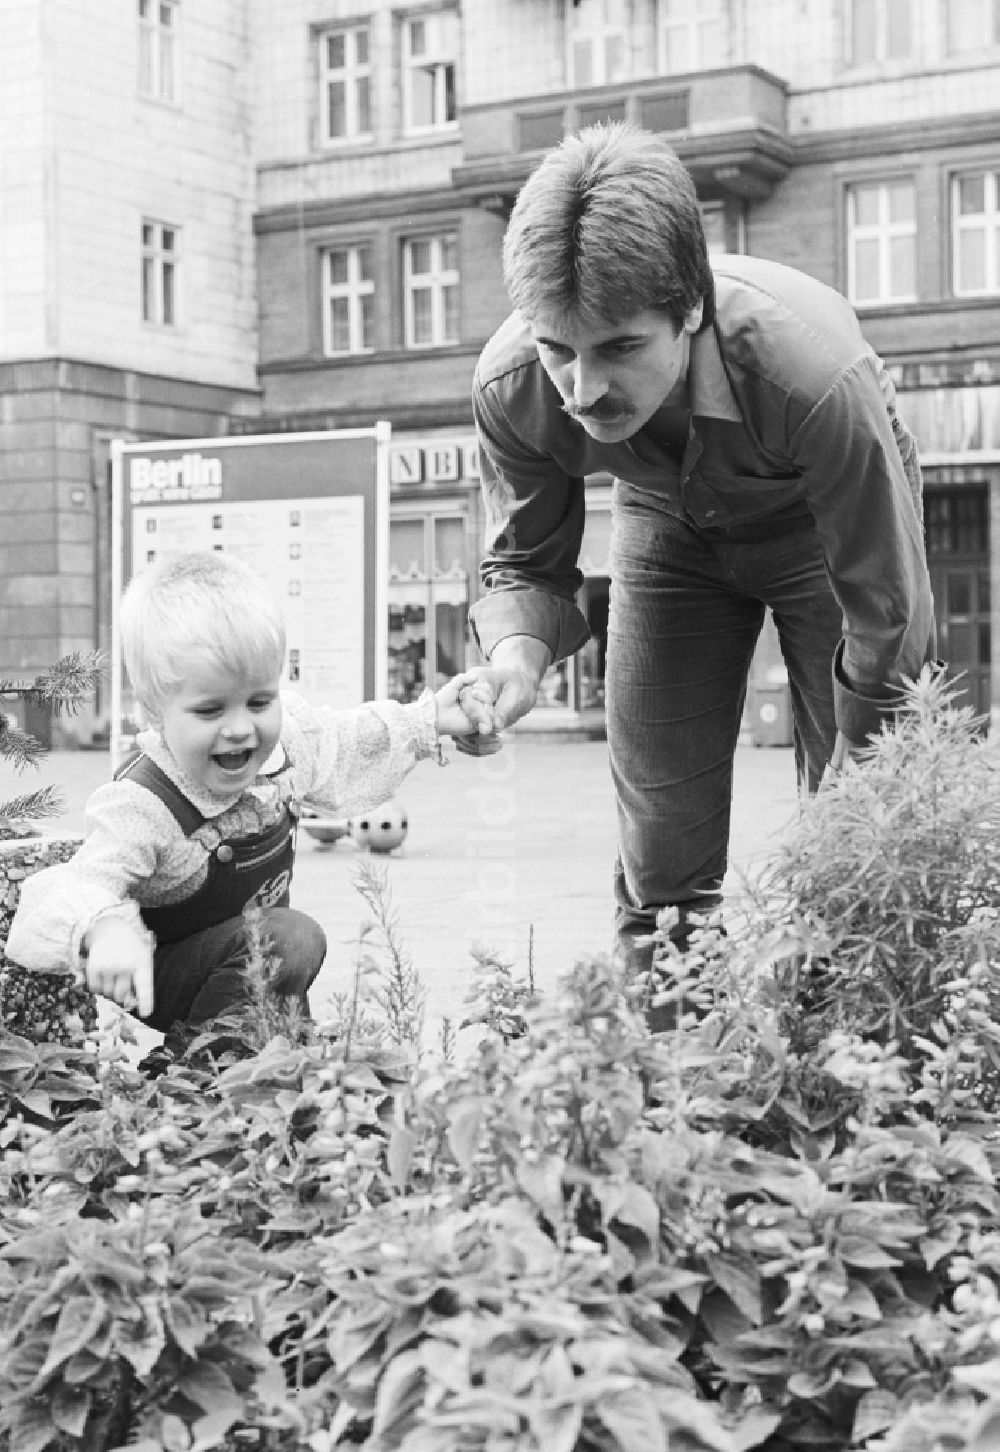 DDR-Fotoarchiv: Berlin - Ein Vater steht mit seinem Kind vor einem Blumenbeet in Berlin, der ehemaligen Hauptstadt der DDR, Deutsche Demokratische Republik